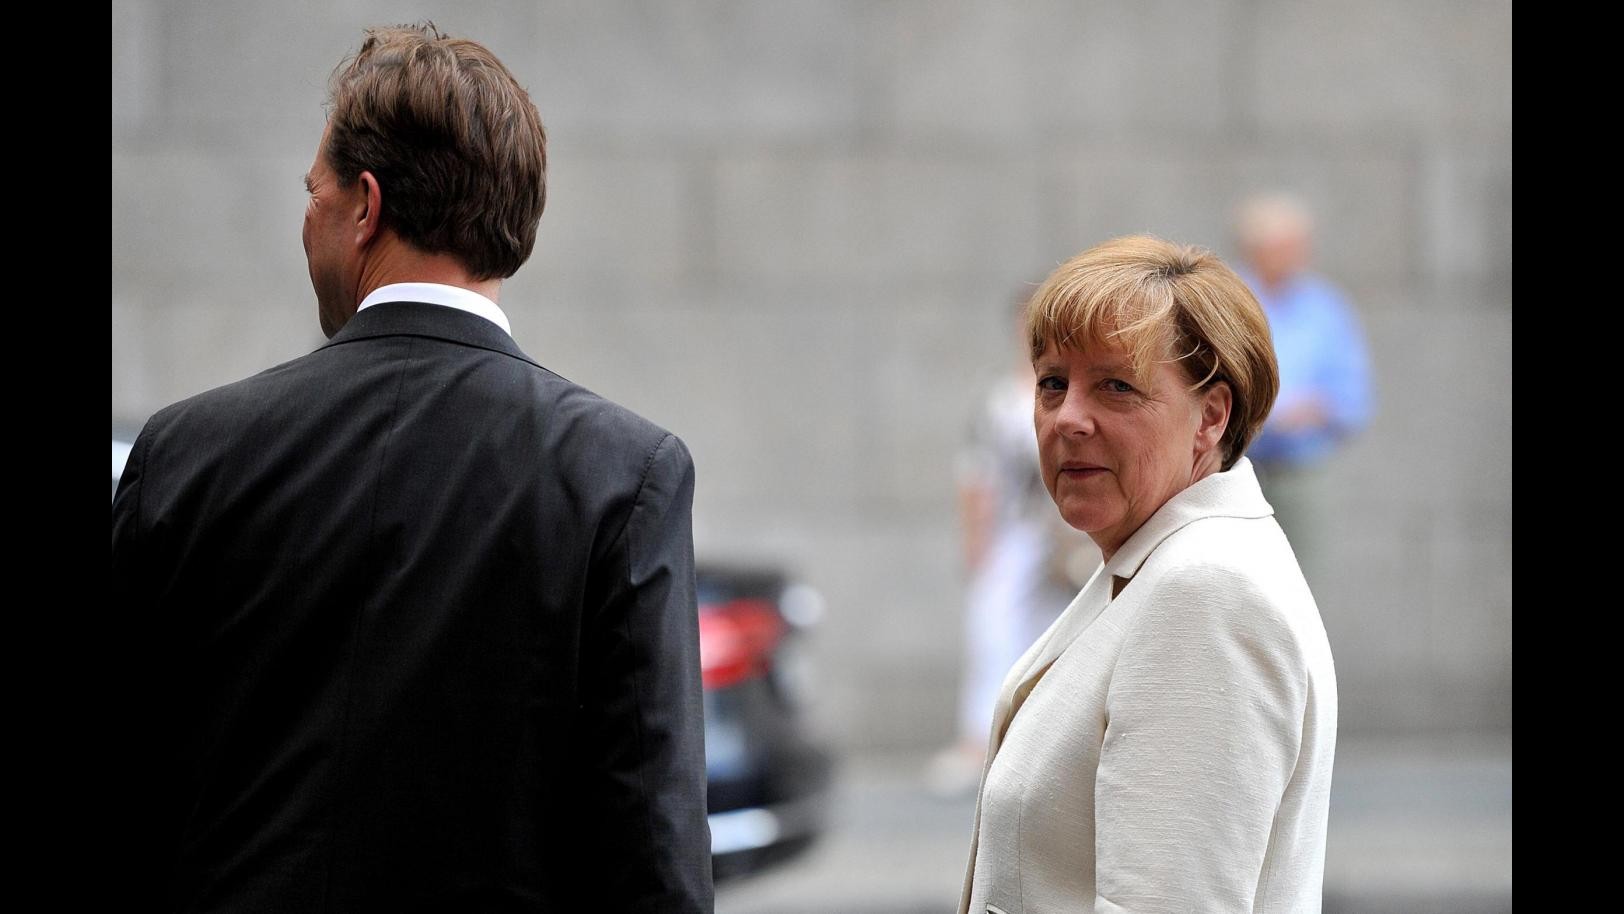 Malore per Angela Merkel: svenuta durante il festival di Wagner in Baviera